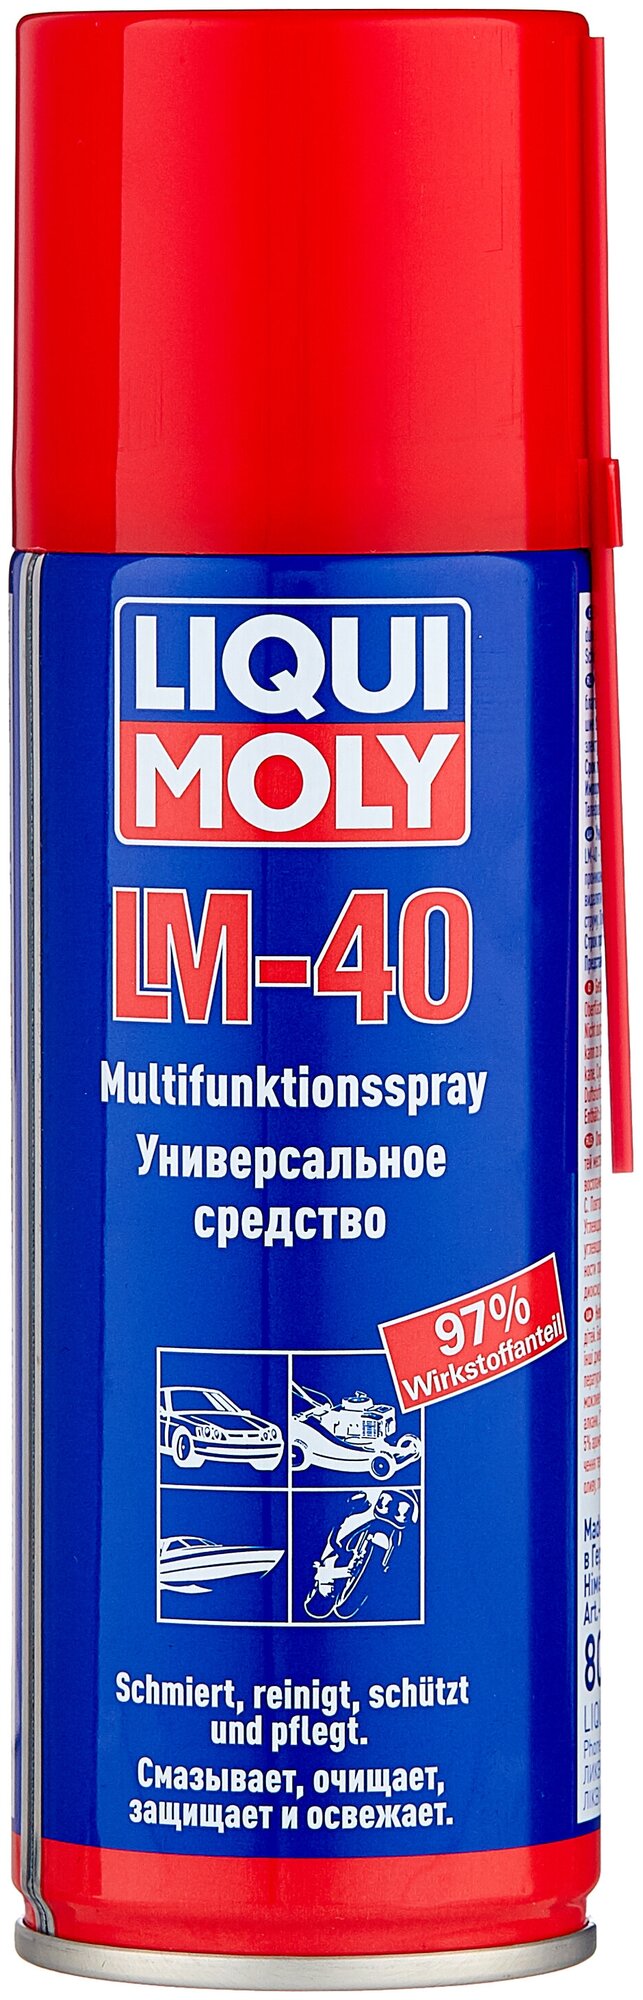 Универсальное средство LM-40 LIQUI-MOLY Multi-Funktions-Spray 0,2 л. 8048